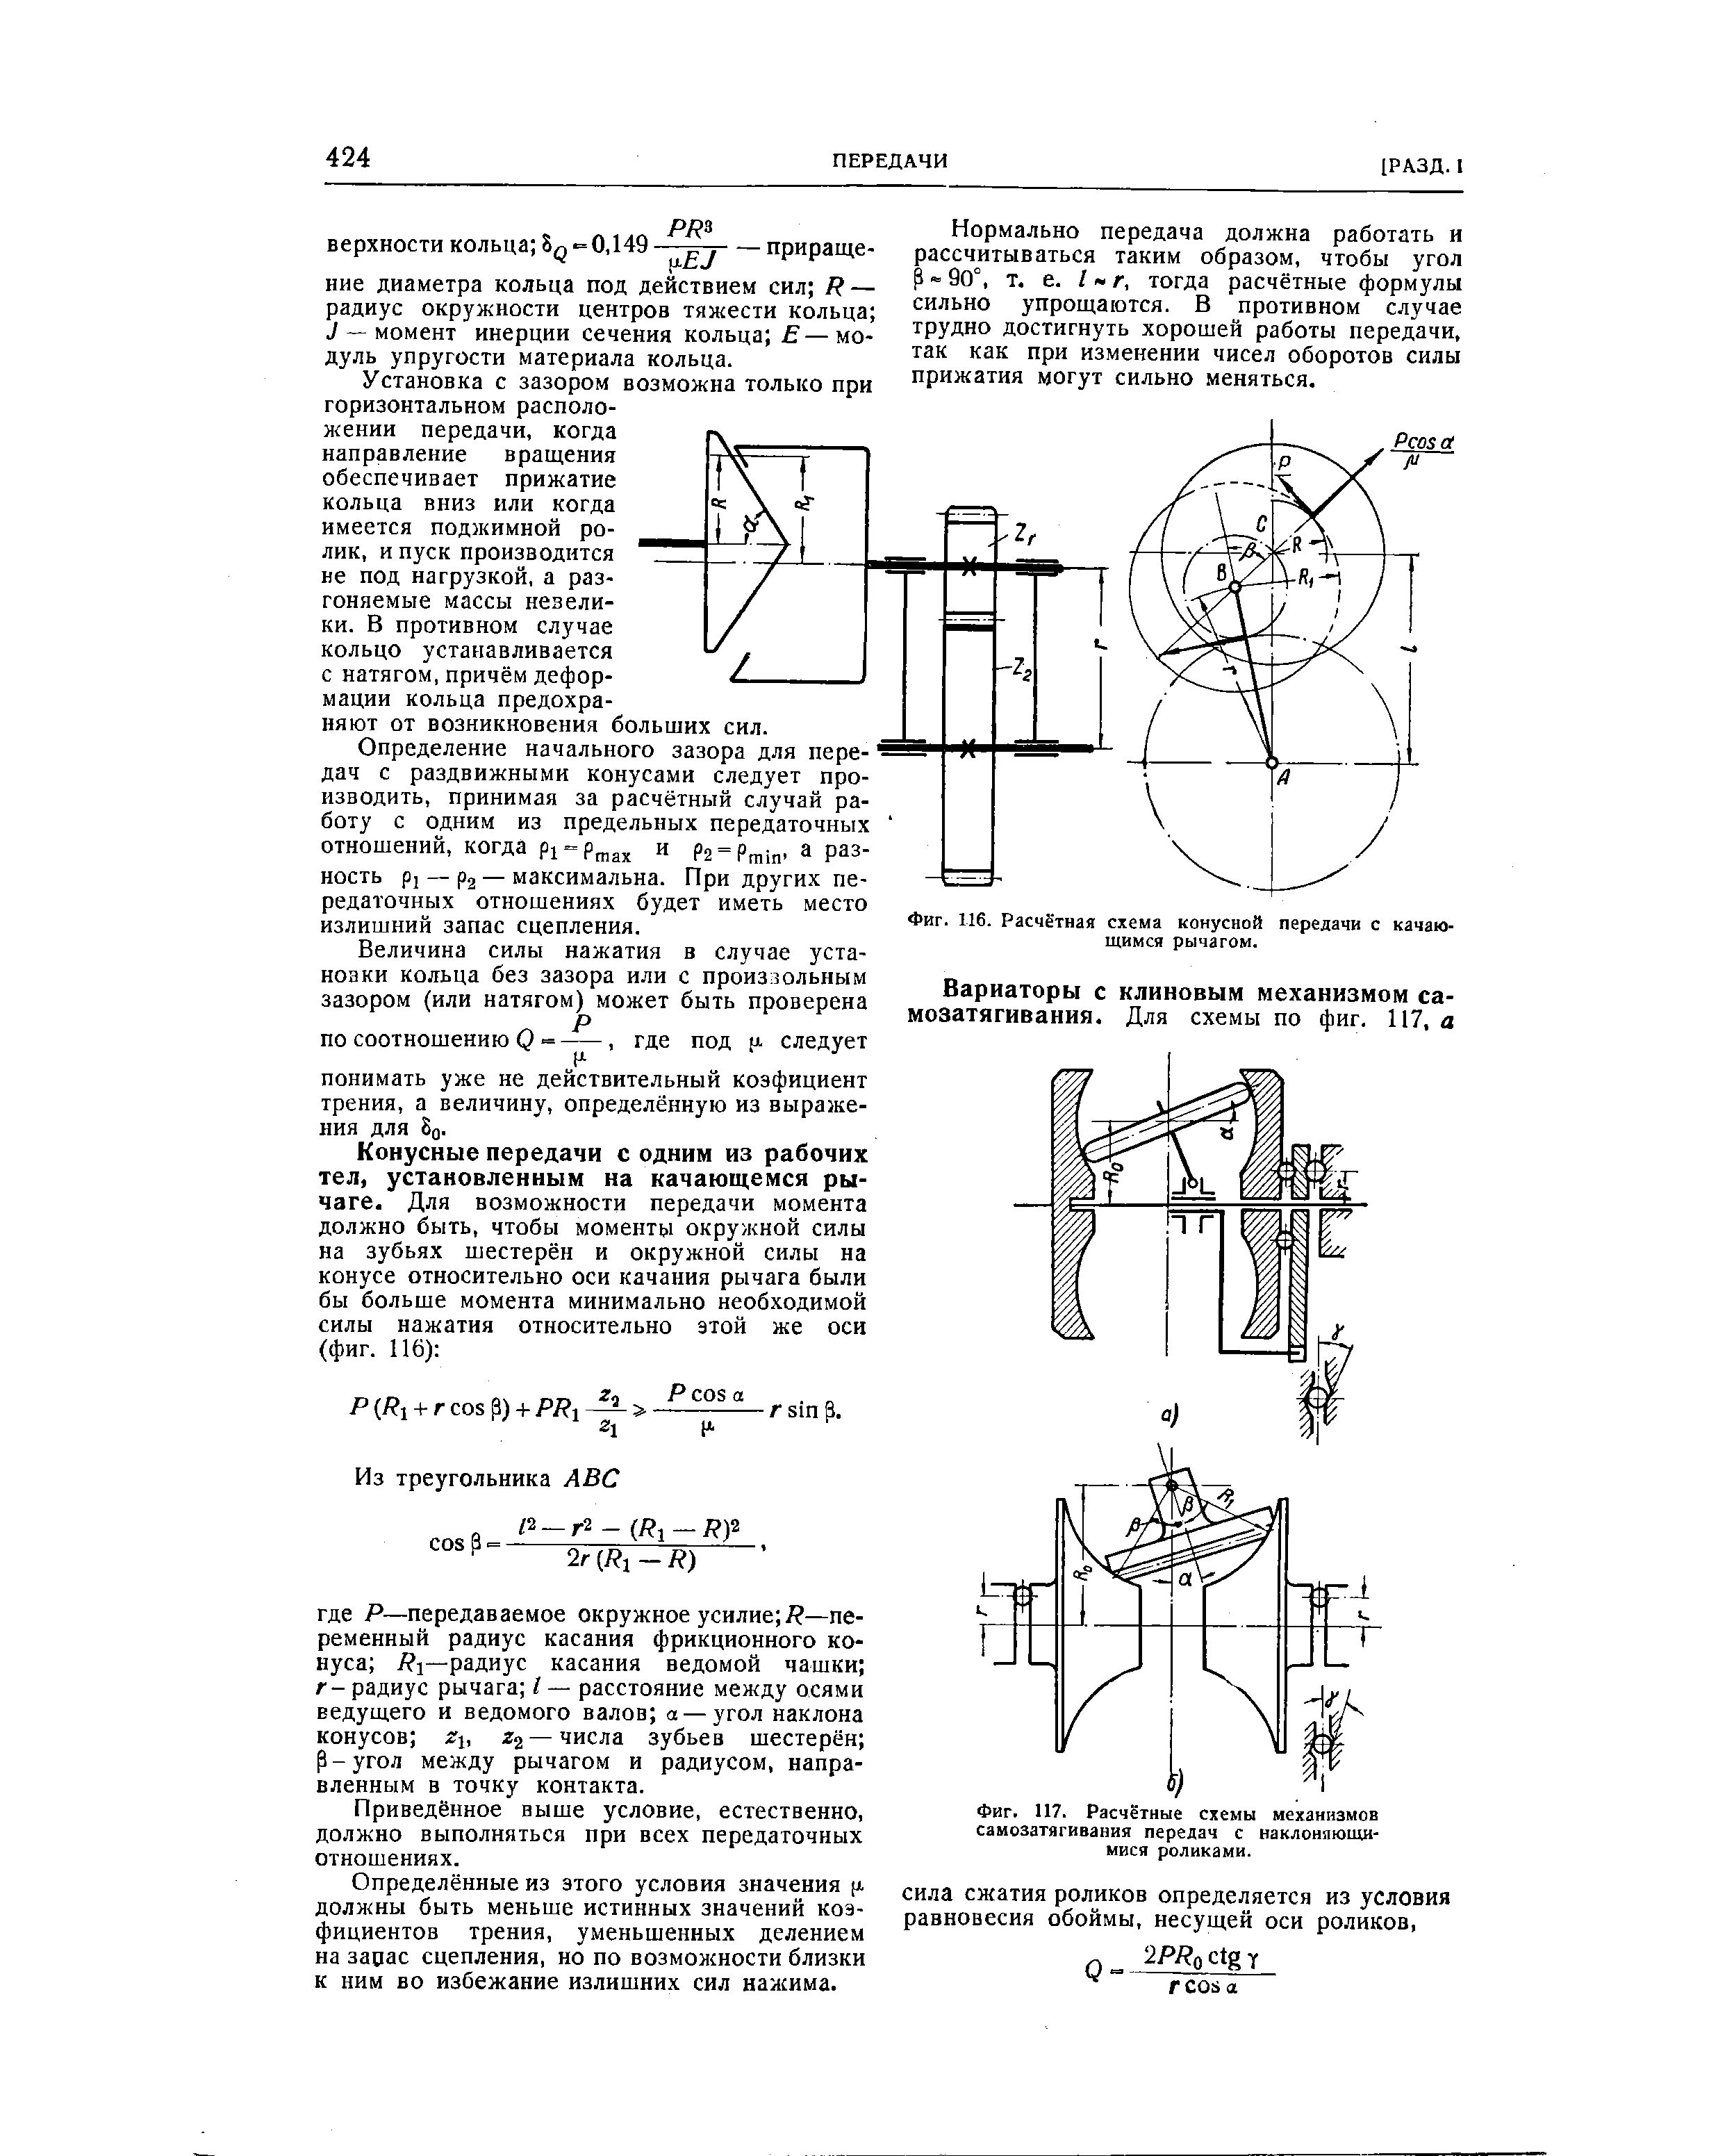 Фиг. 116. Расчётная схема конусной передачи с качающимся рычагом.
